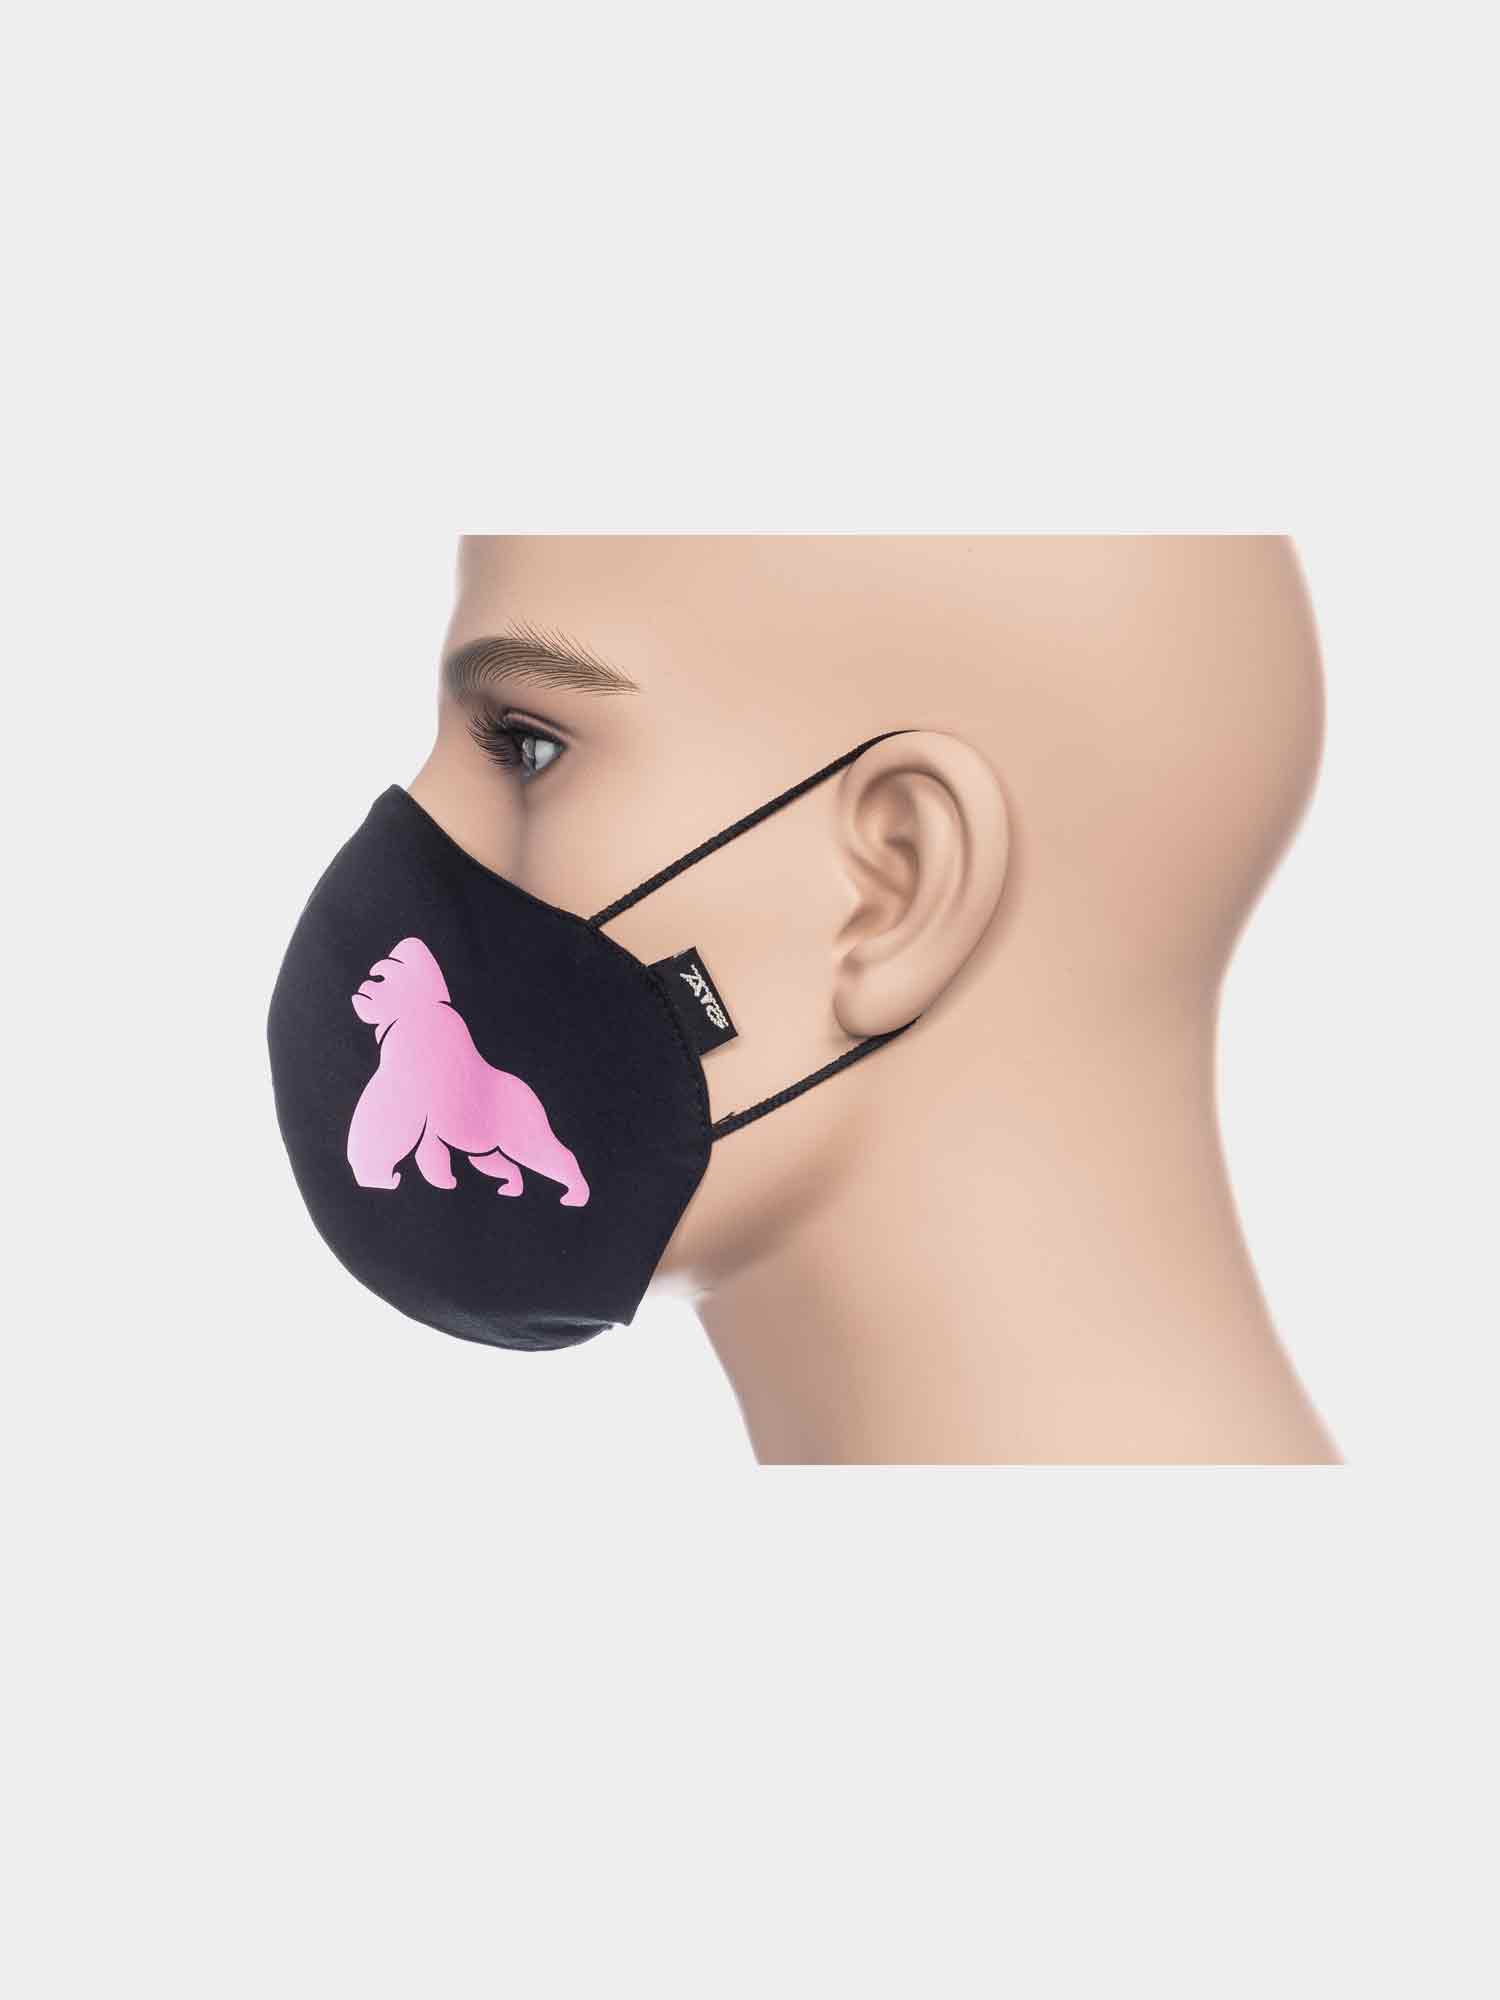 ATO Maske 030 Gorilla schwarz/pink